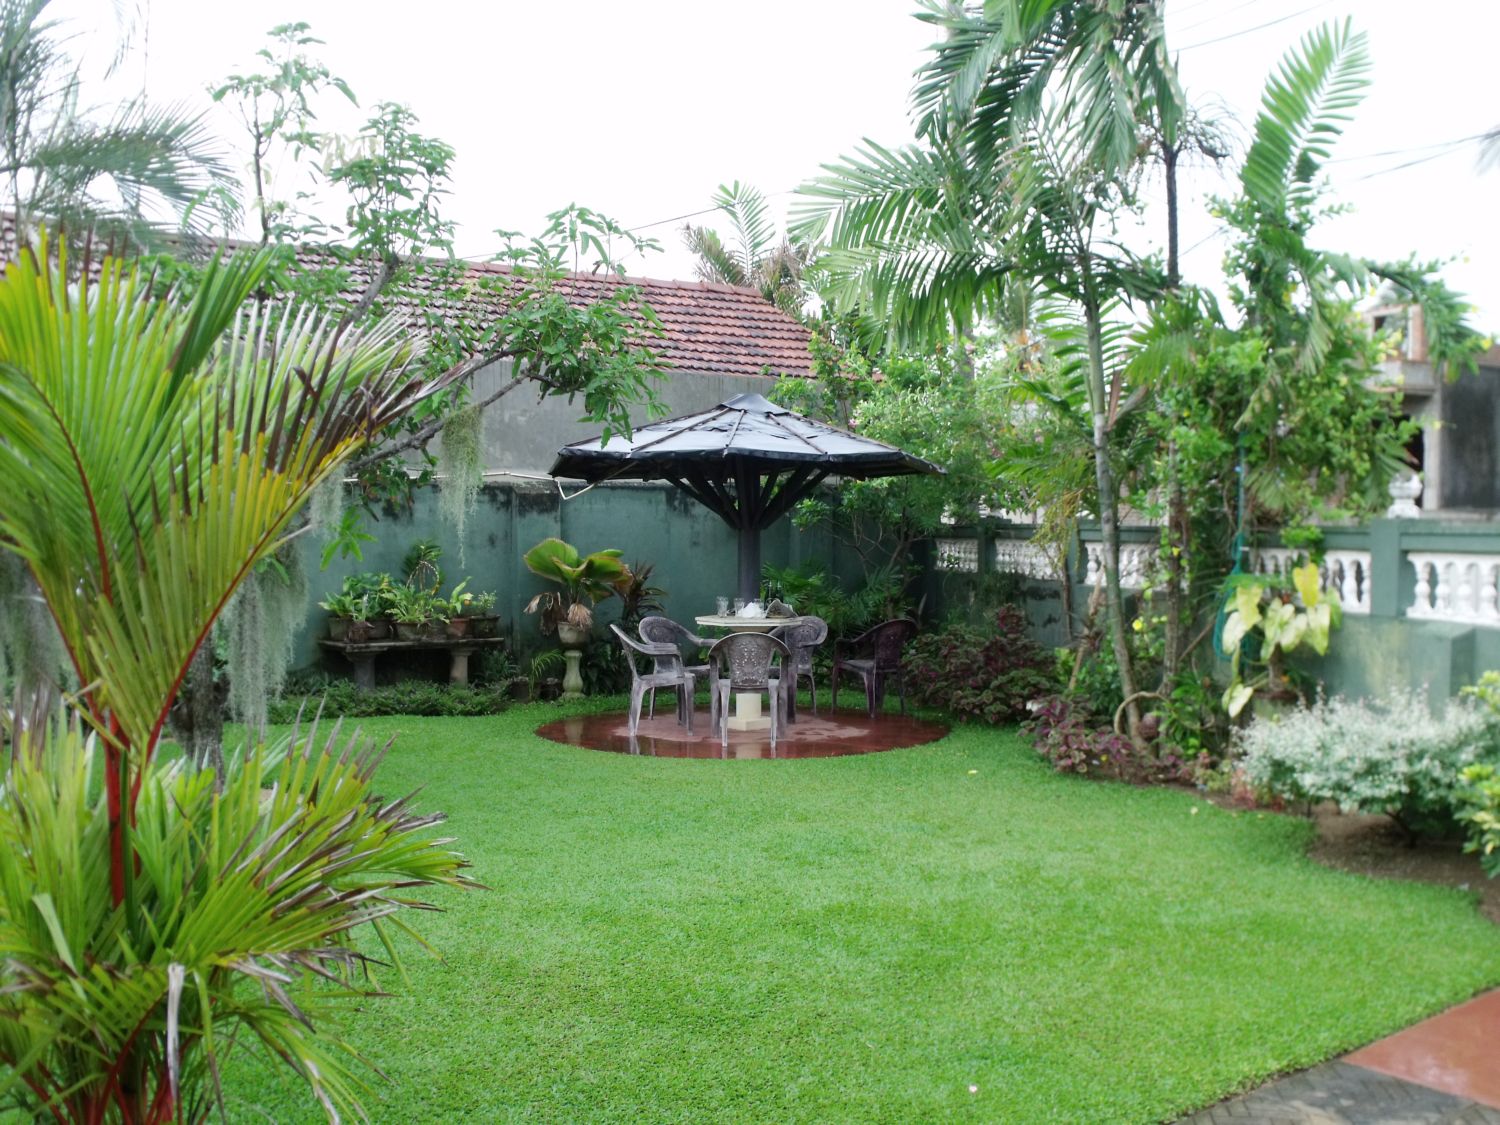 Home-garden in Duwa, Negombo, Sri Lanka.